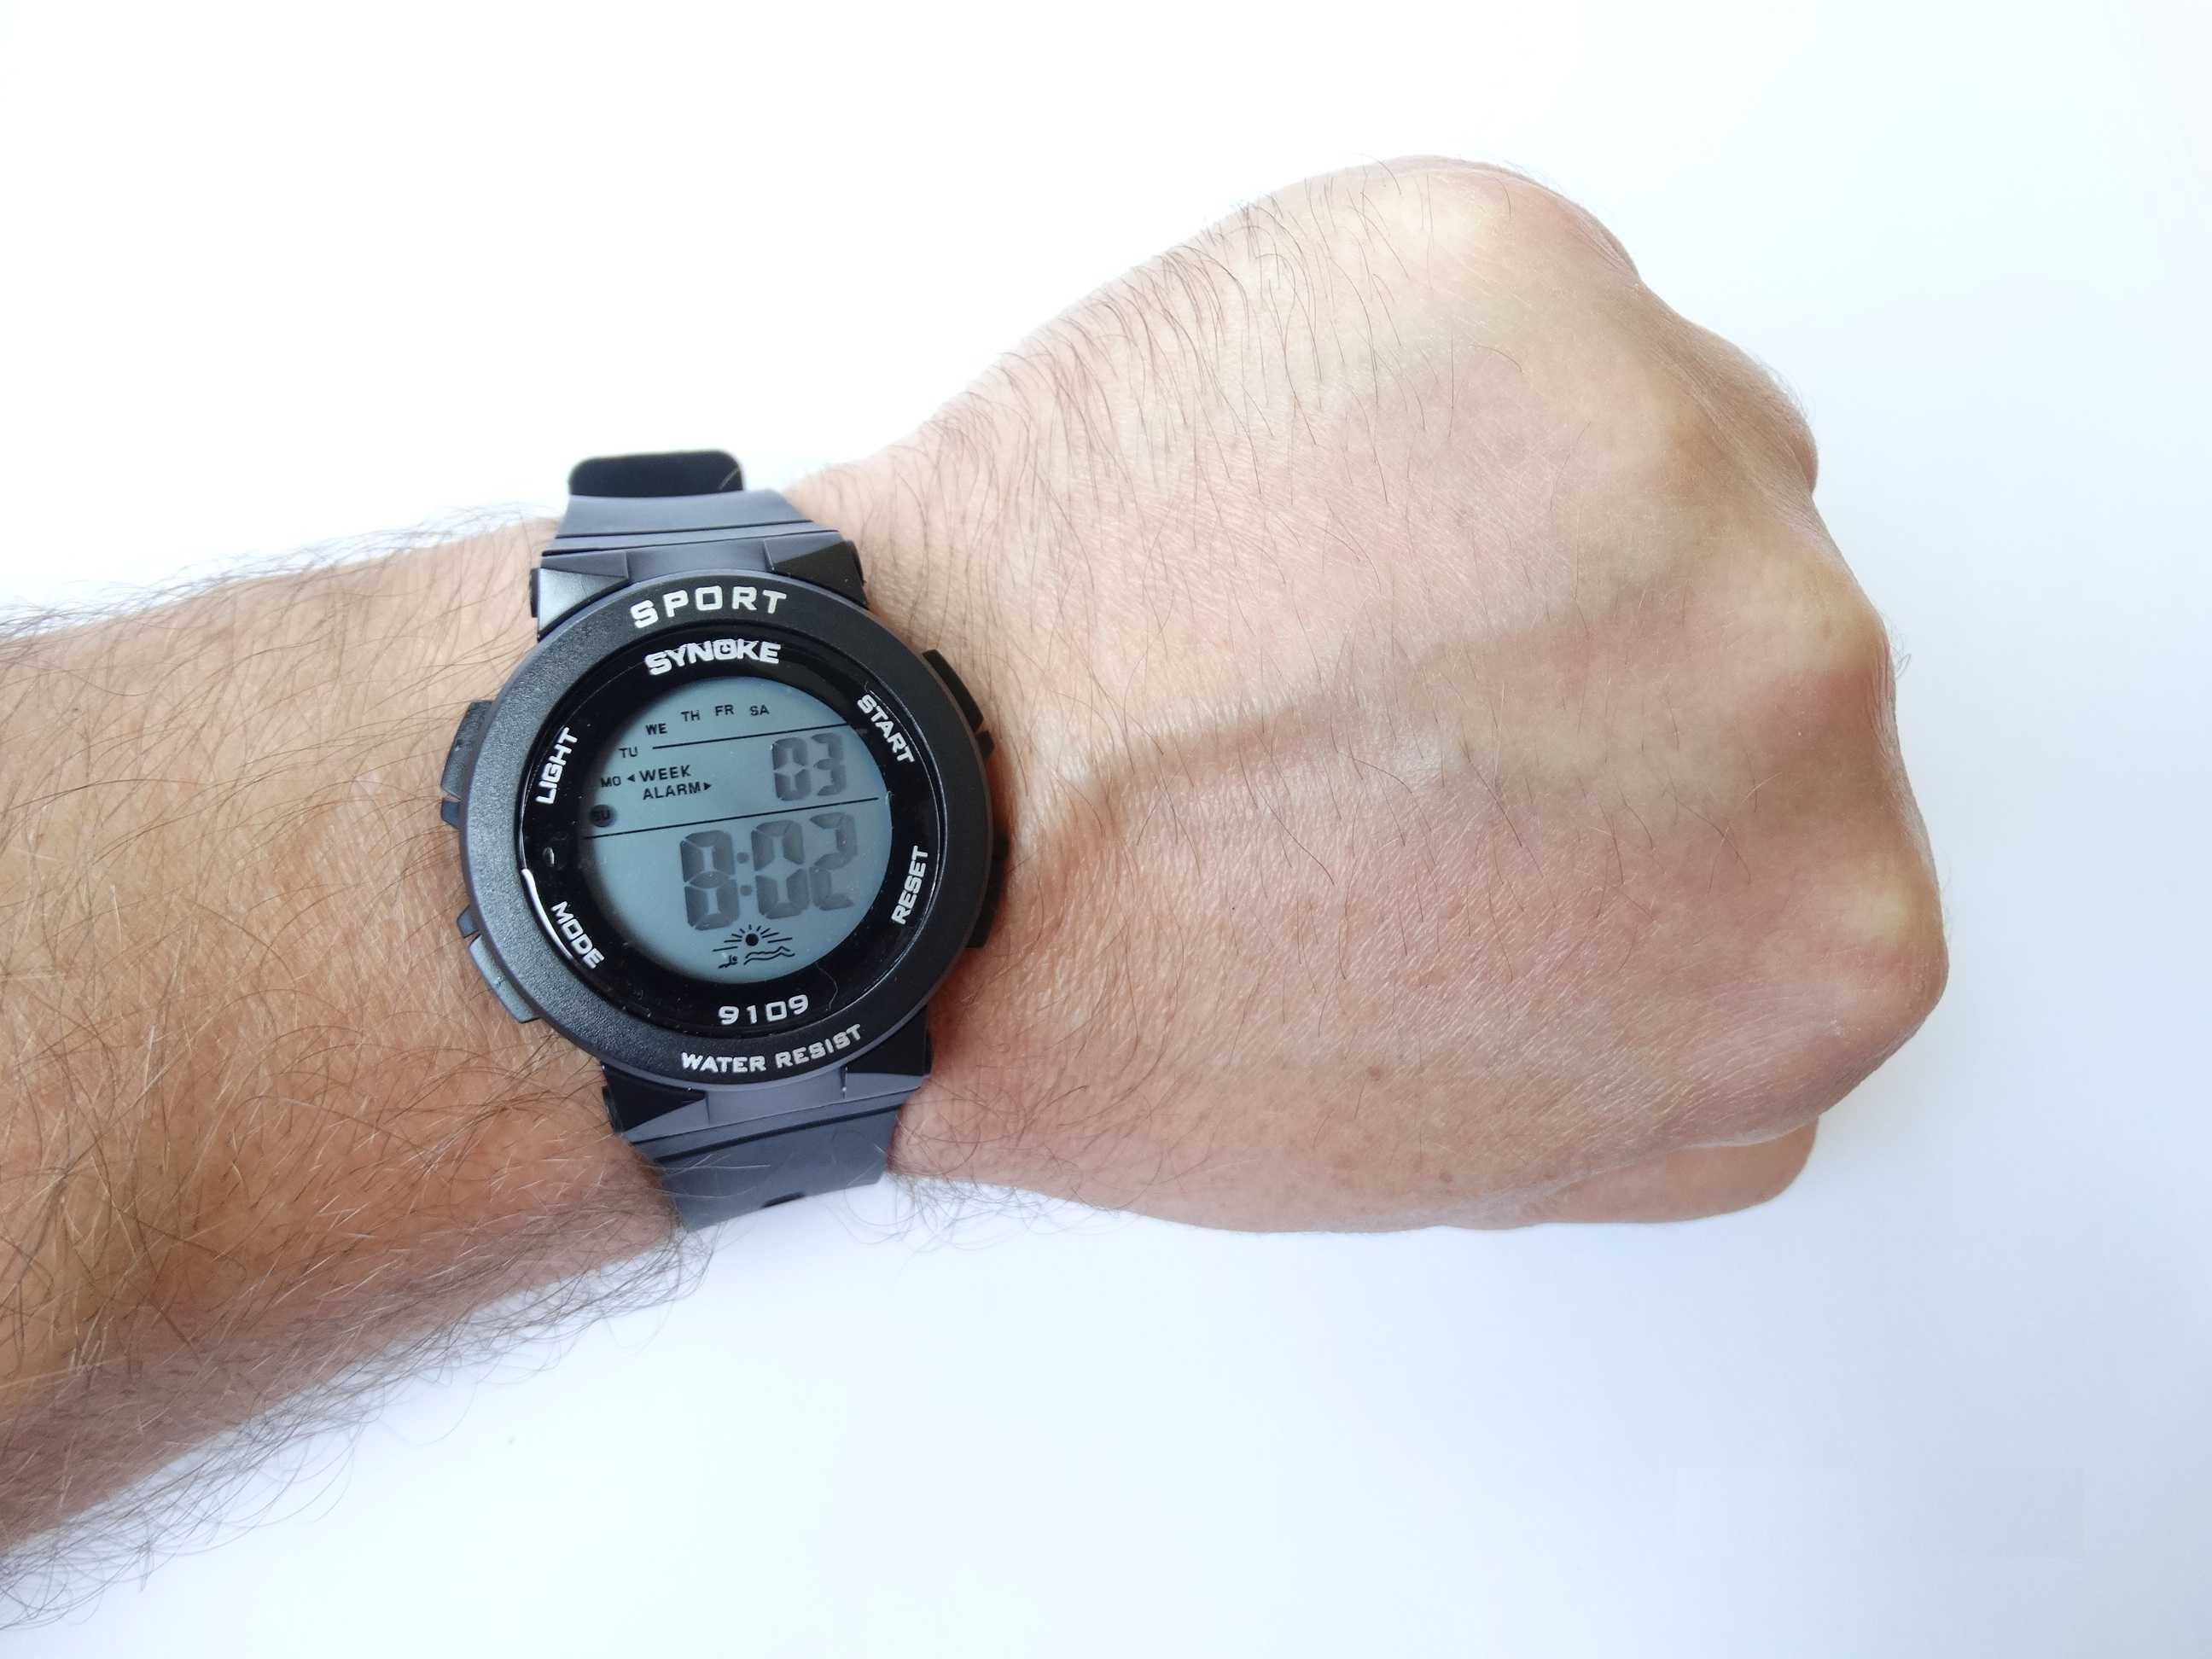 Zegarek elektroniczny cyfrowy Synoke LED podświetlana tarcza sporotwy